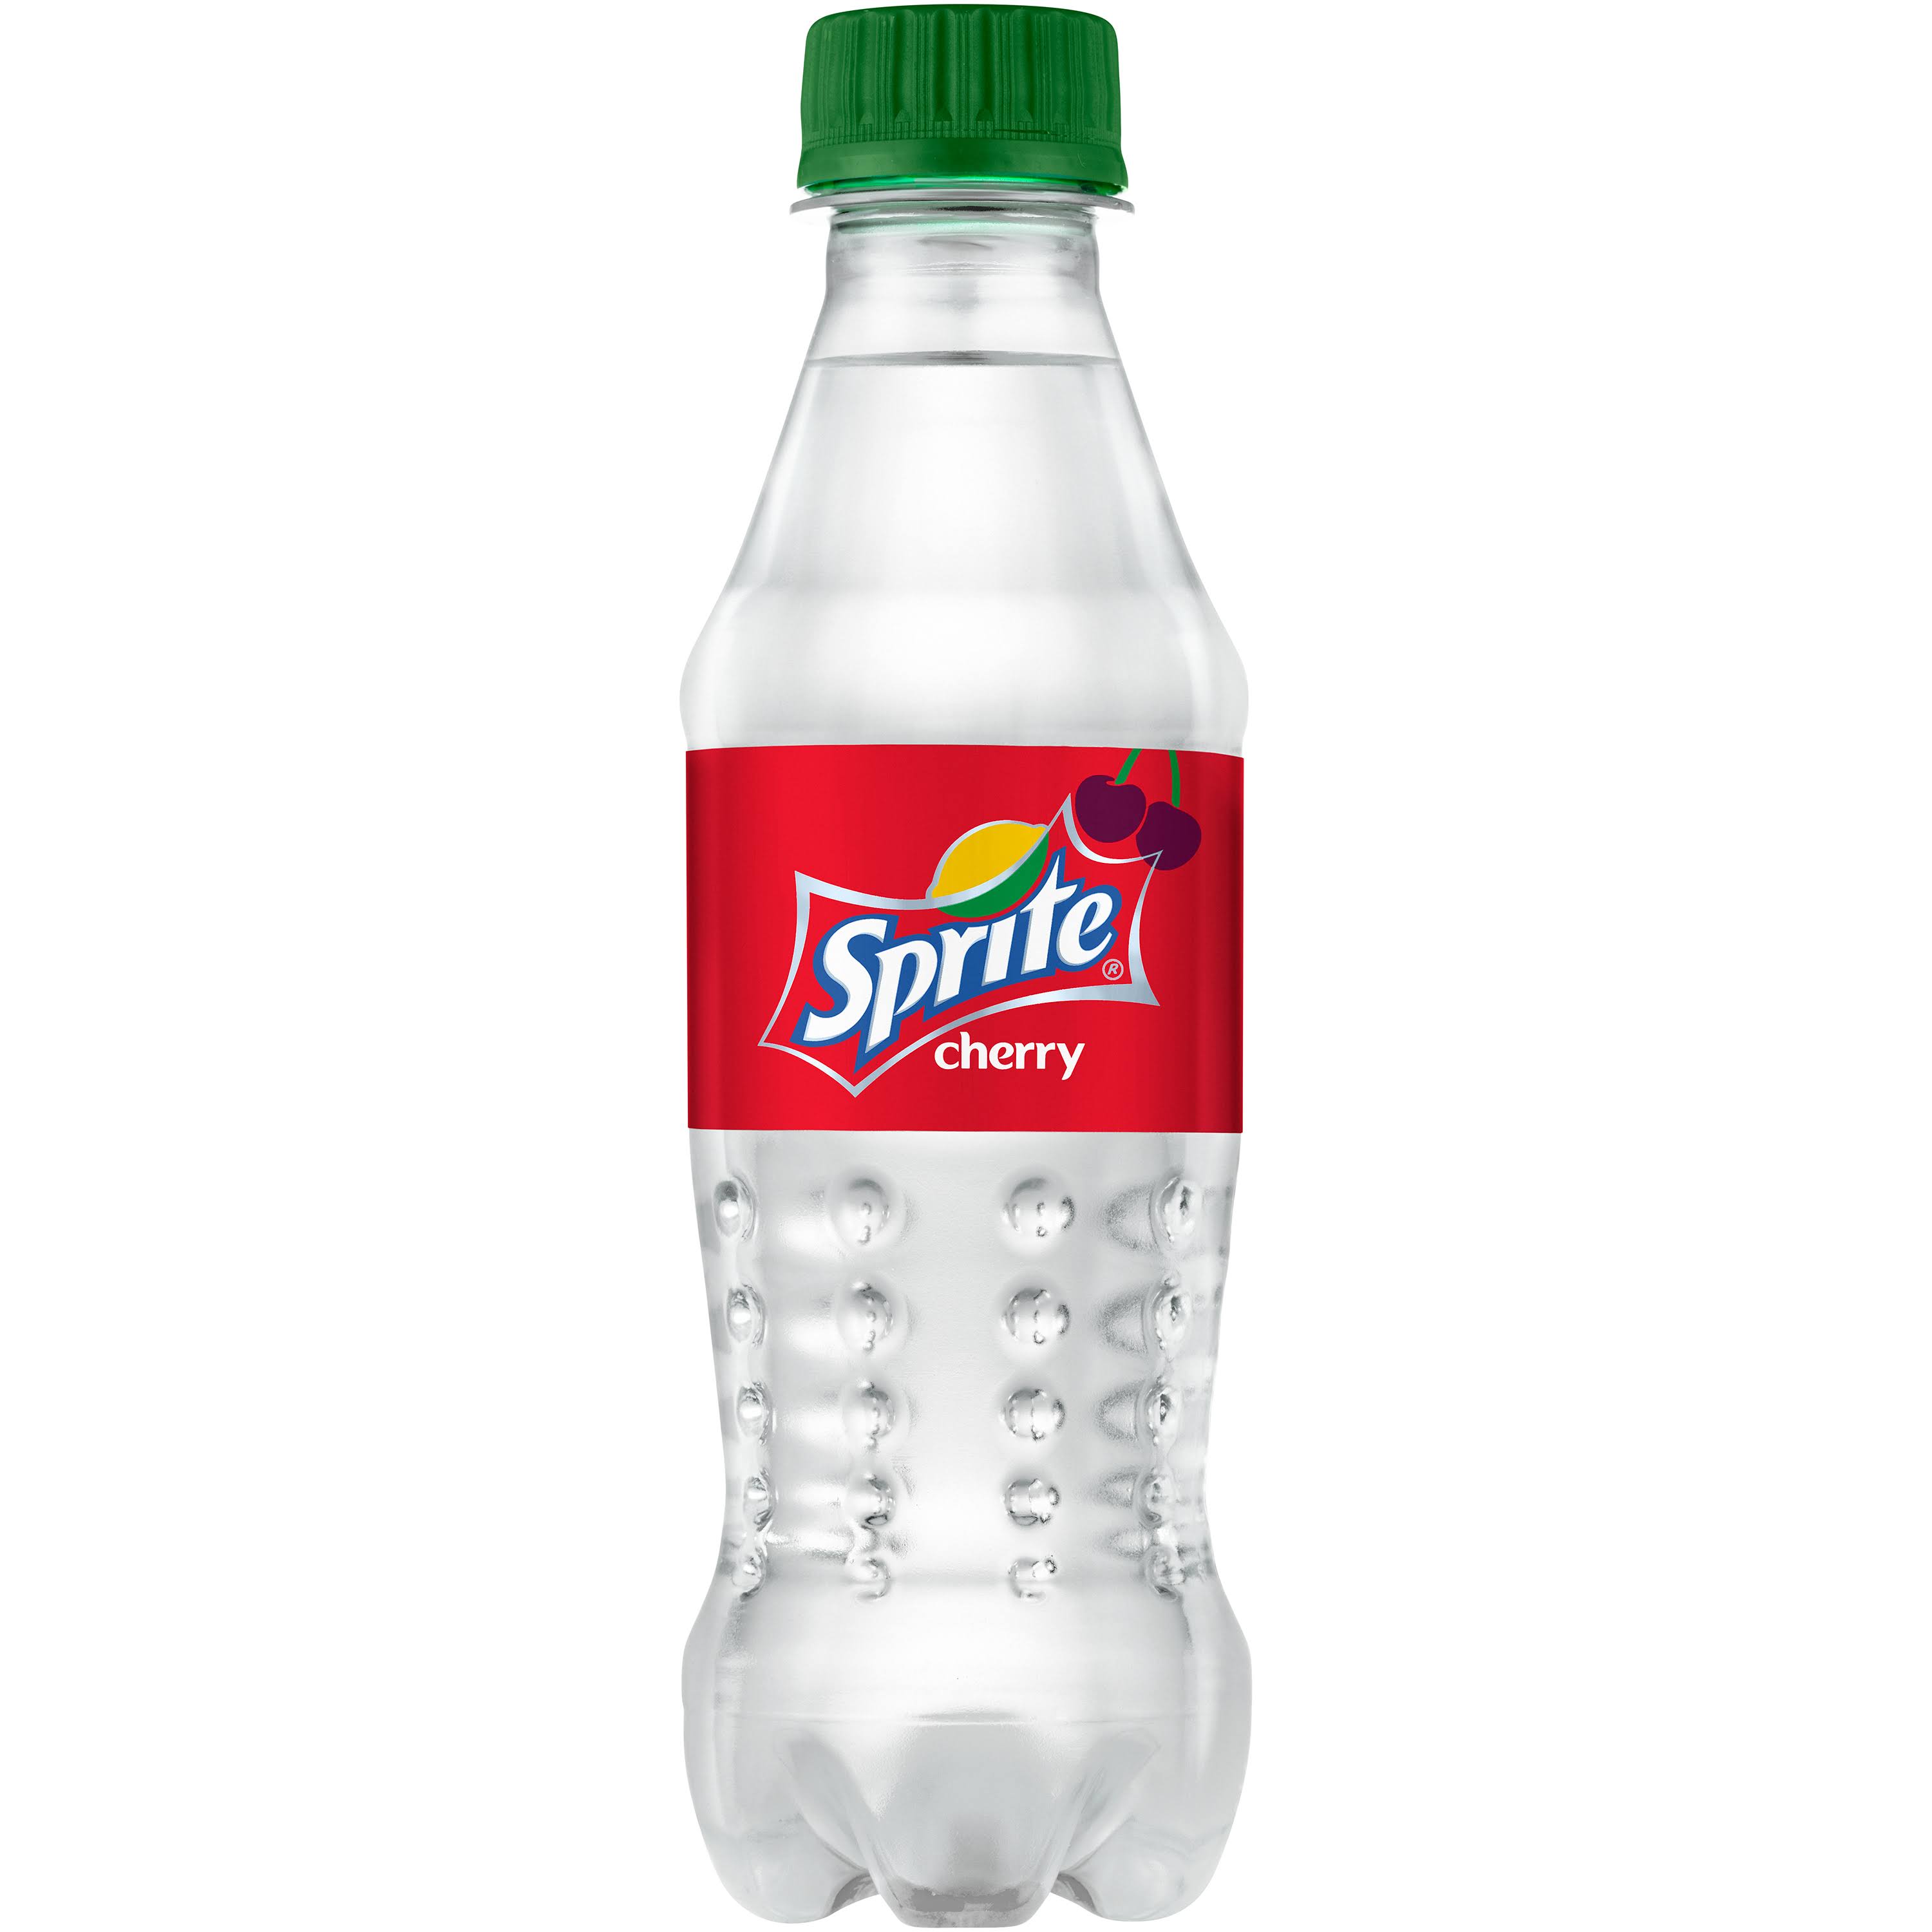 Sprite Cherry Soda - 8.55 fl oz bottle